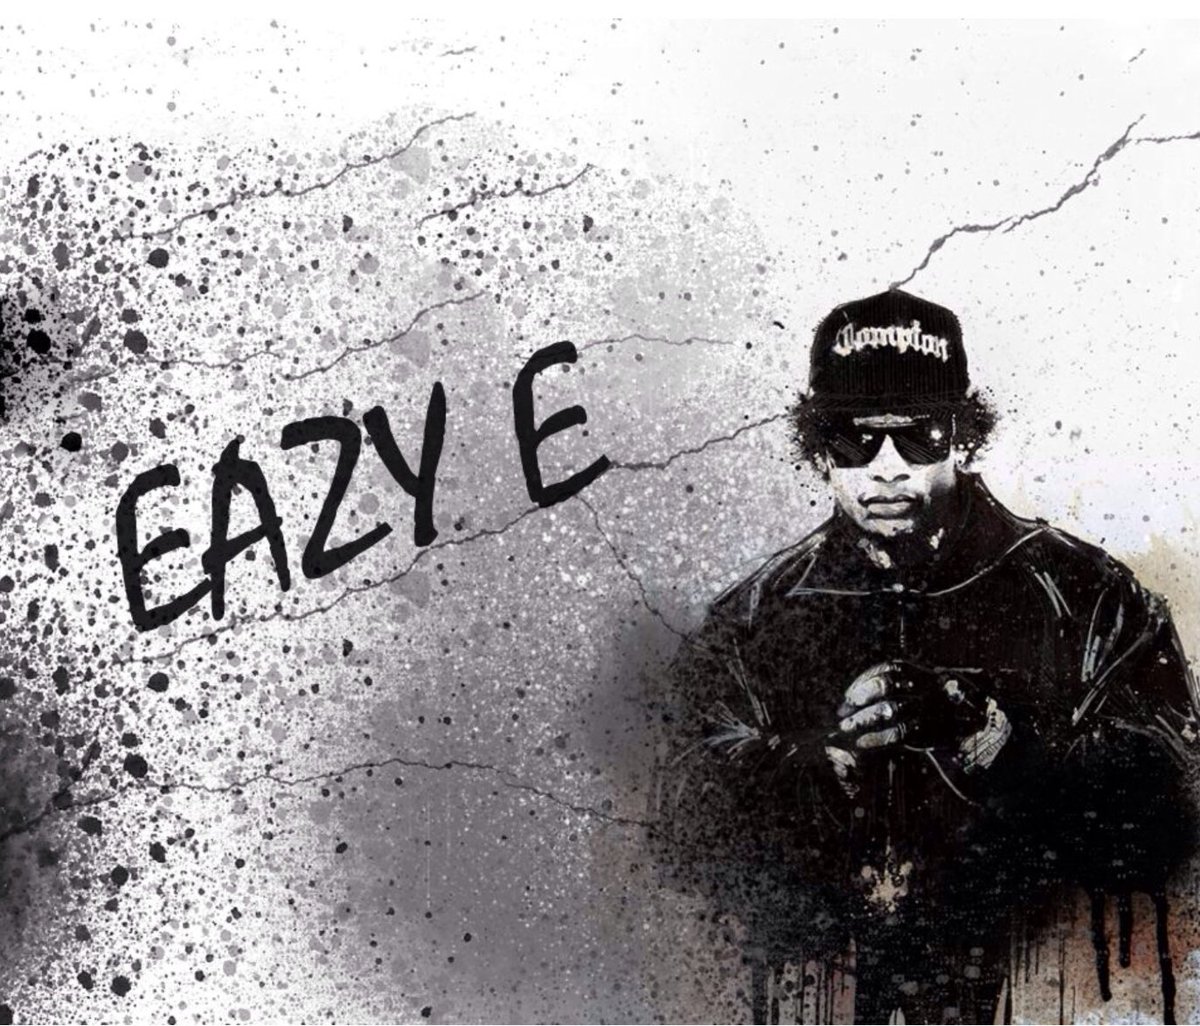 Eazy-E Birthday